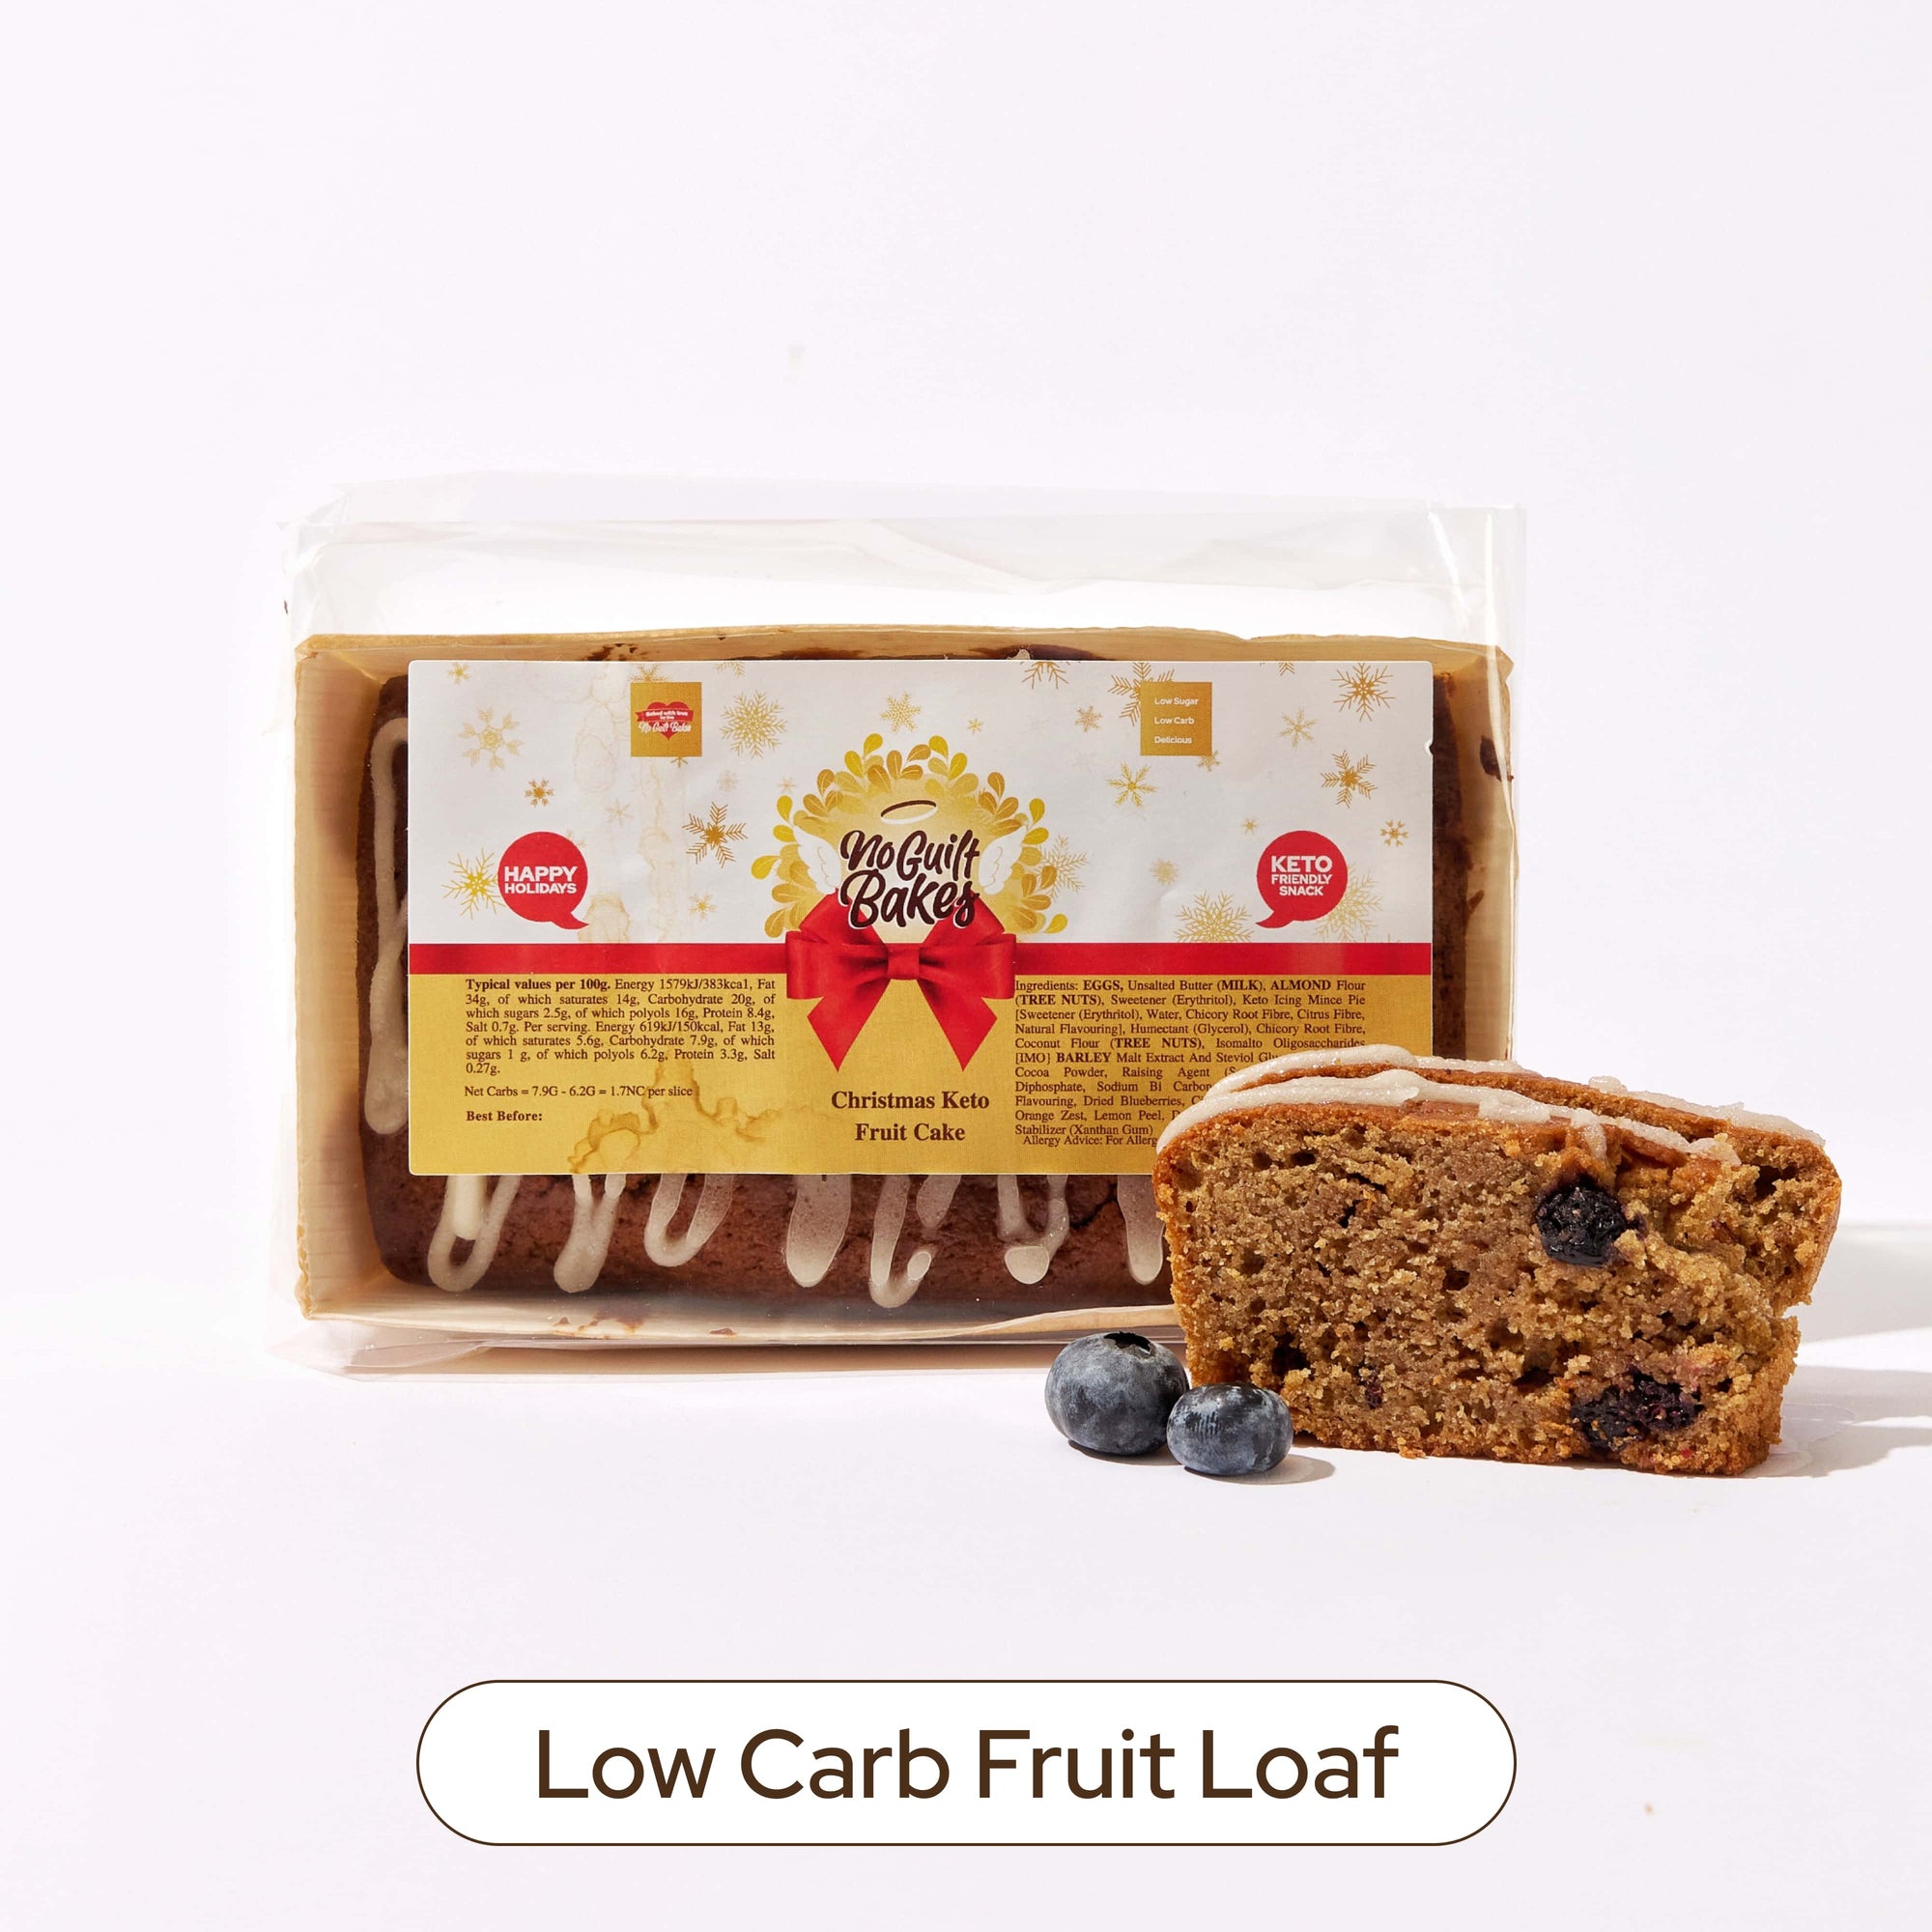 No Guilt Bakes' Festive Loaf Bundle.